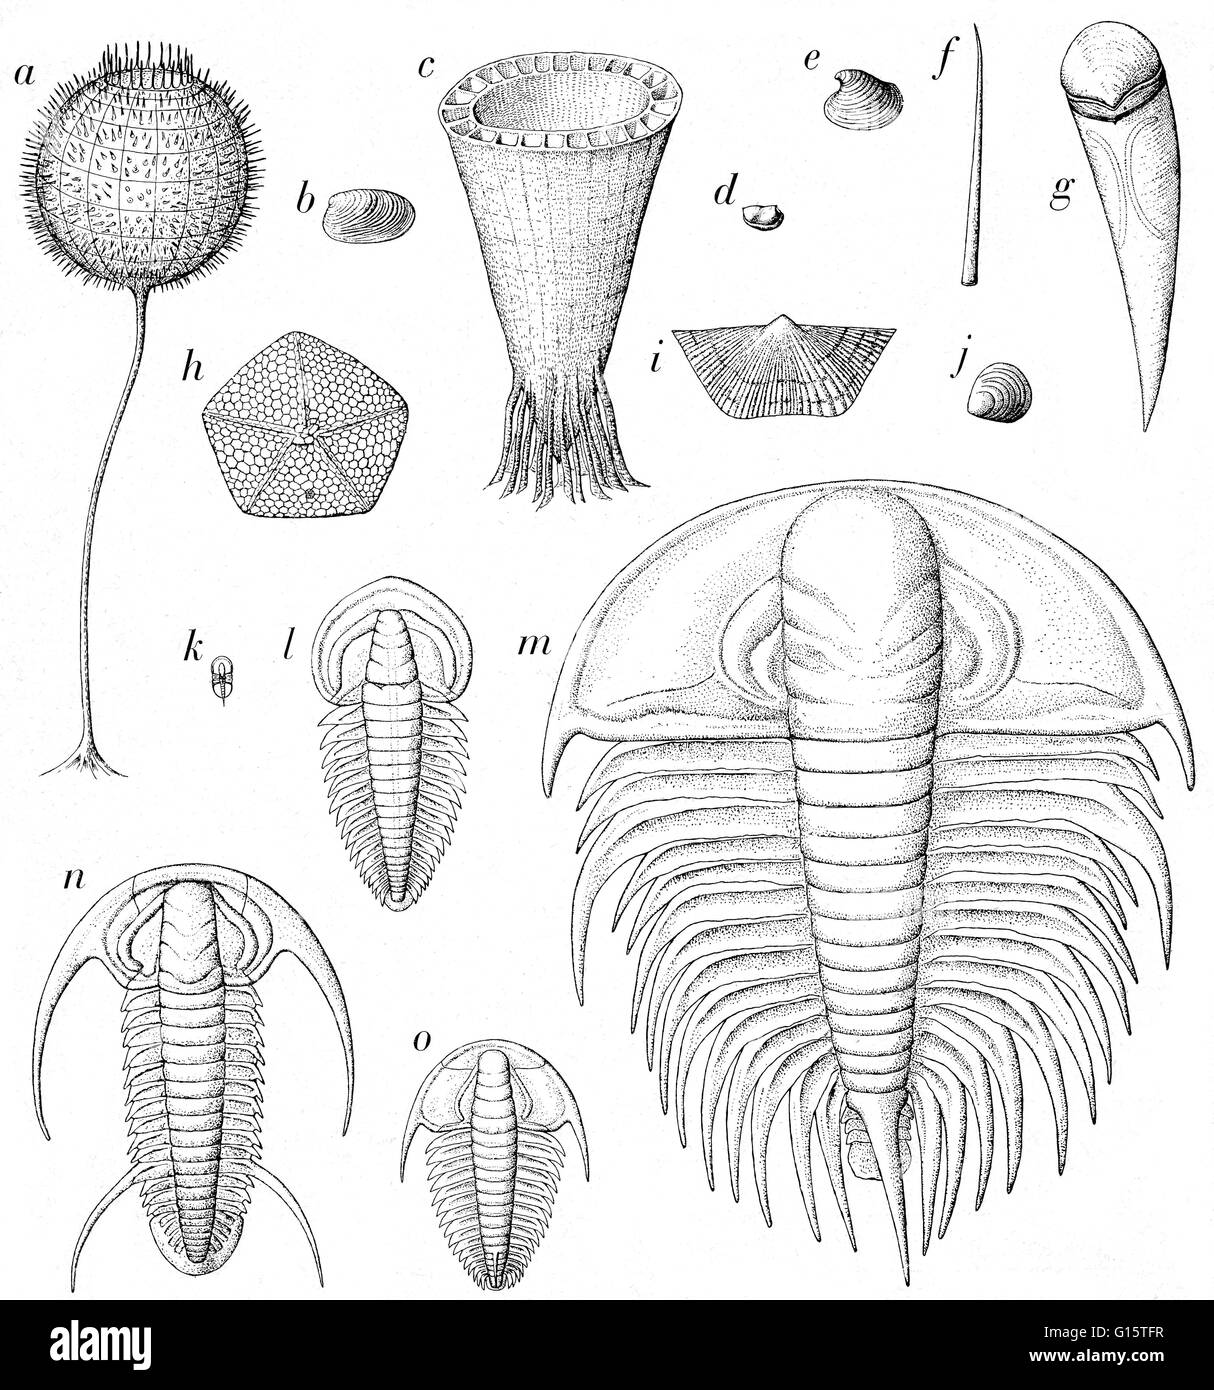 Titolo: record di fossili di early Cambrian volte. Alcuni sono disegnati quasi a dimensione reale. Tra di loro ci sono gli artropodi (D e K - 0), molluschi (B, E, e forse, F e G), brachiopodi (I,J), echinodermi (H), spugne (A), e di altri organismi come (C) che probabl Foto Stock